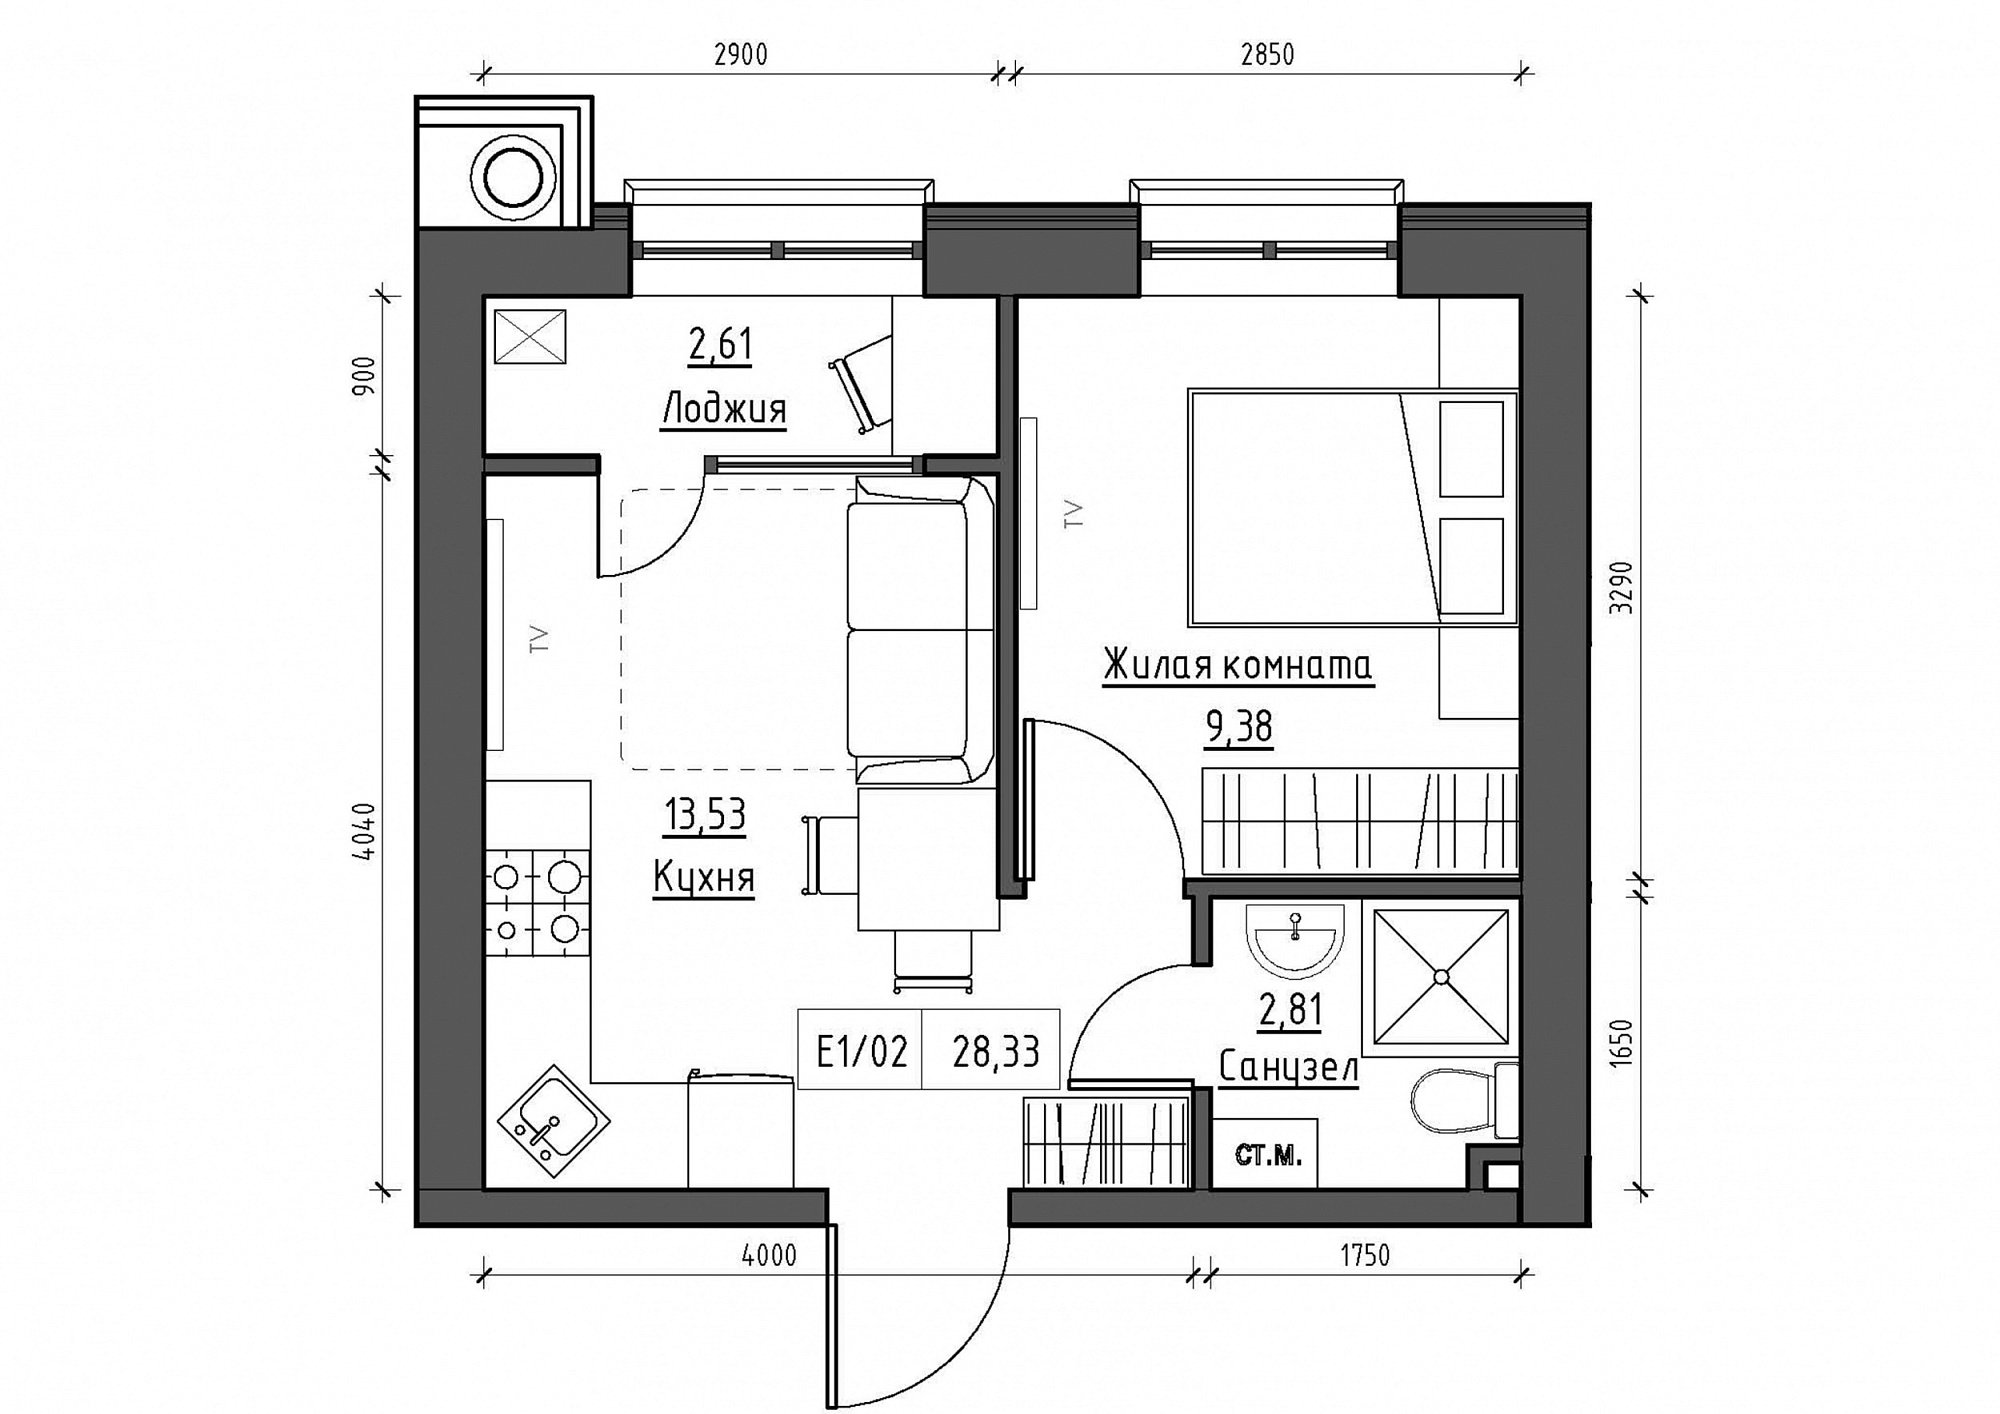 Планування 1-к квартира площею 28.33м2, KS-011-01/0015.